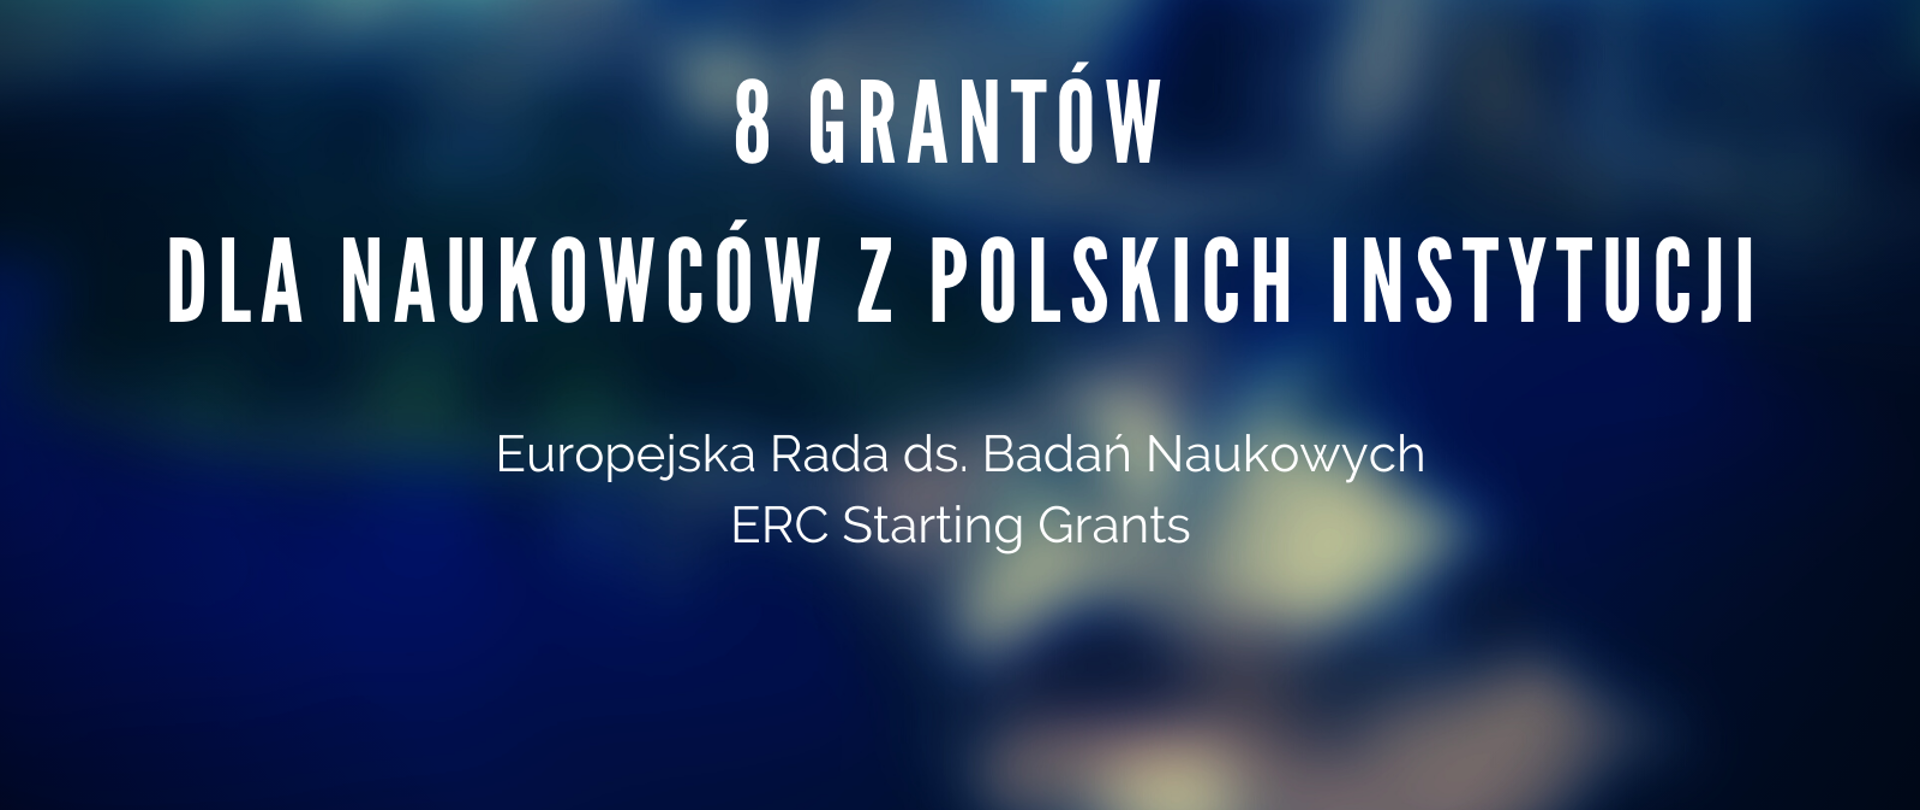 Plansza dotycząca polskich naukowców, którzy otrzymali granty